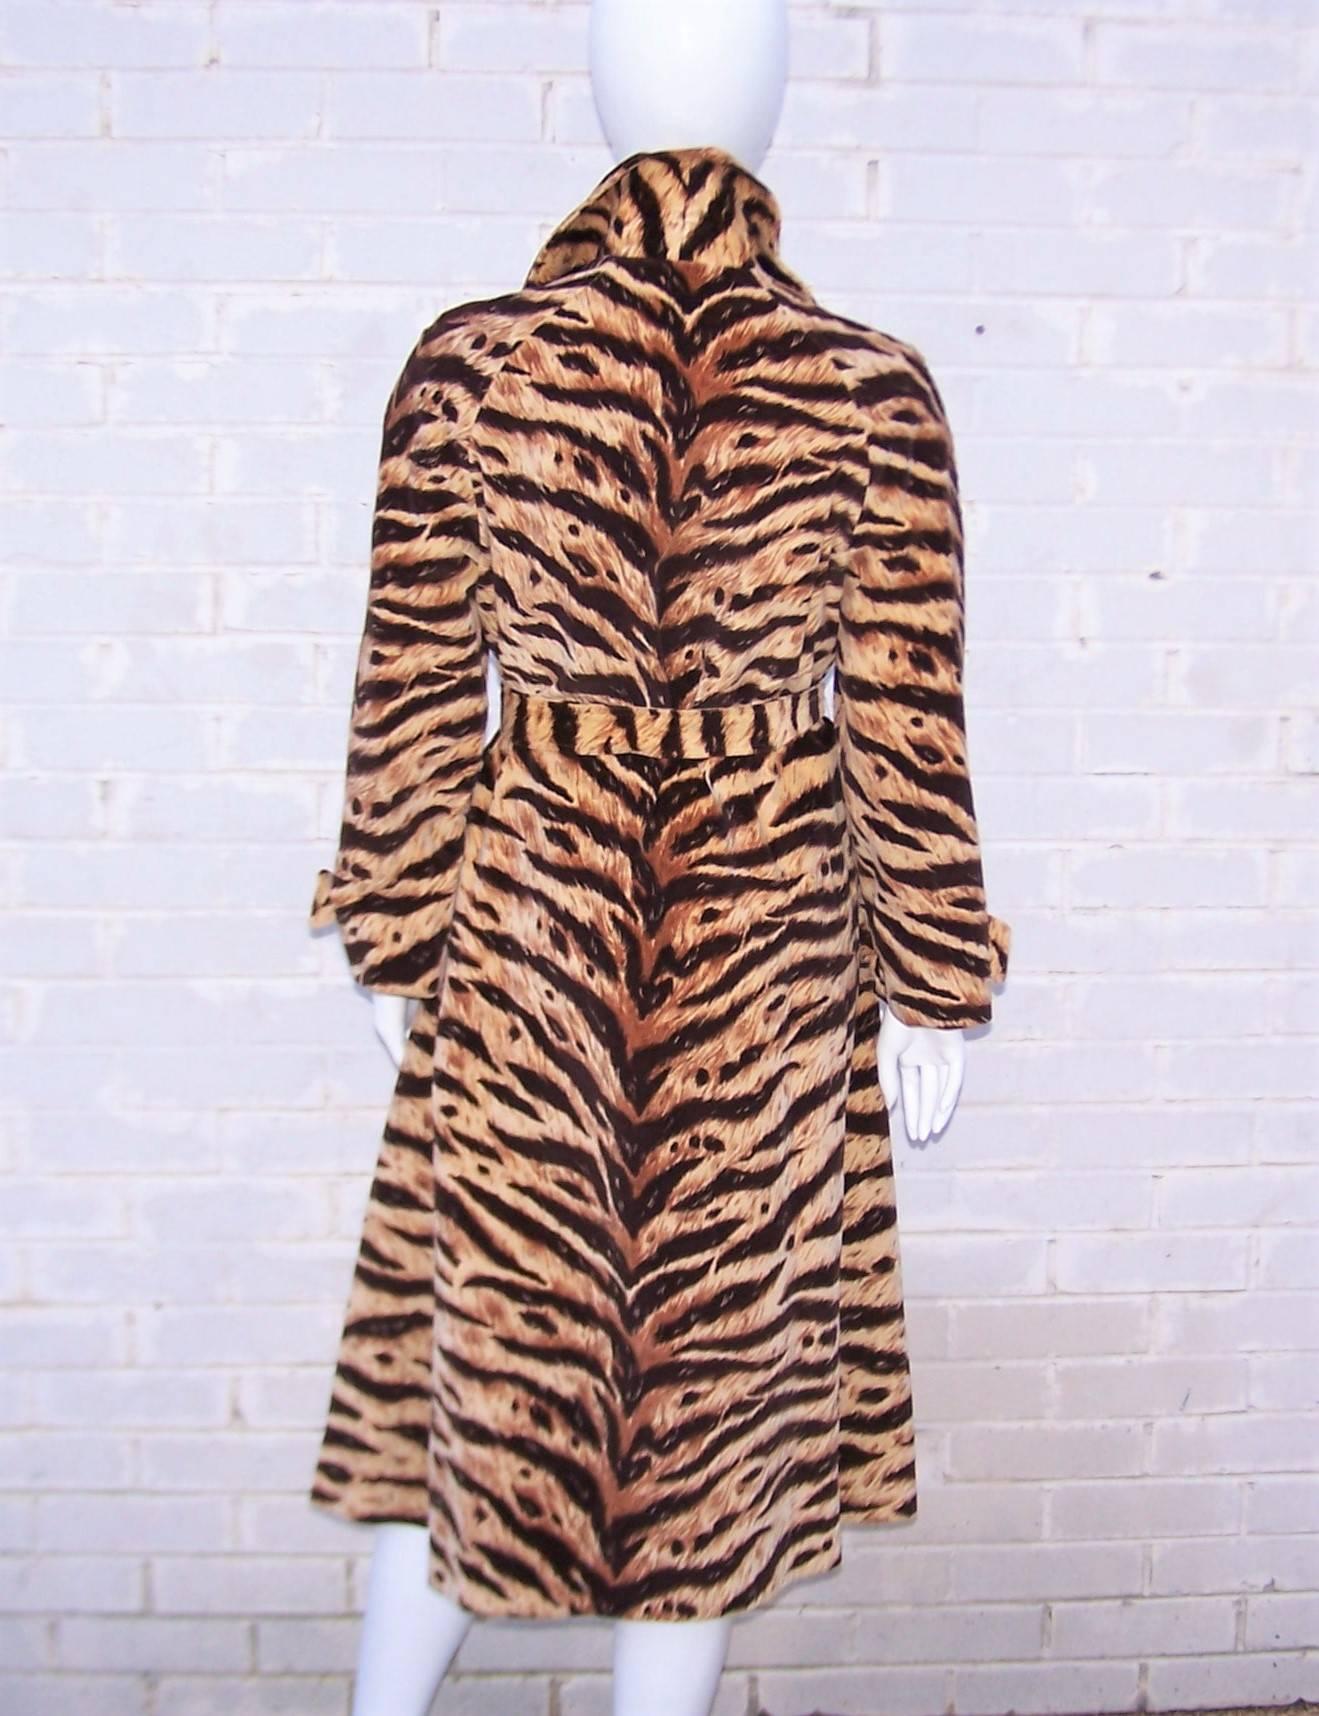 da nang 1970 tiger jacket